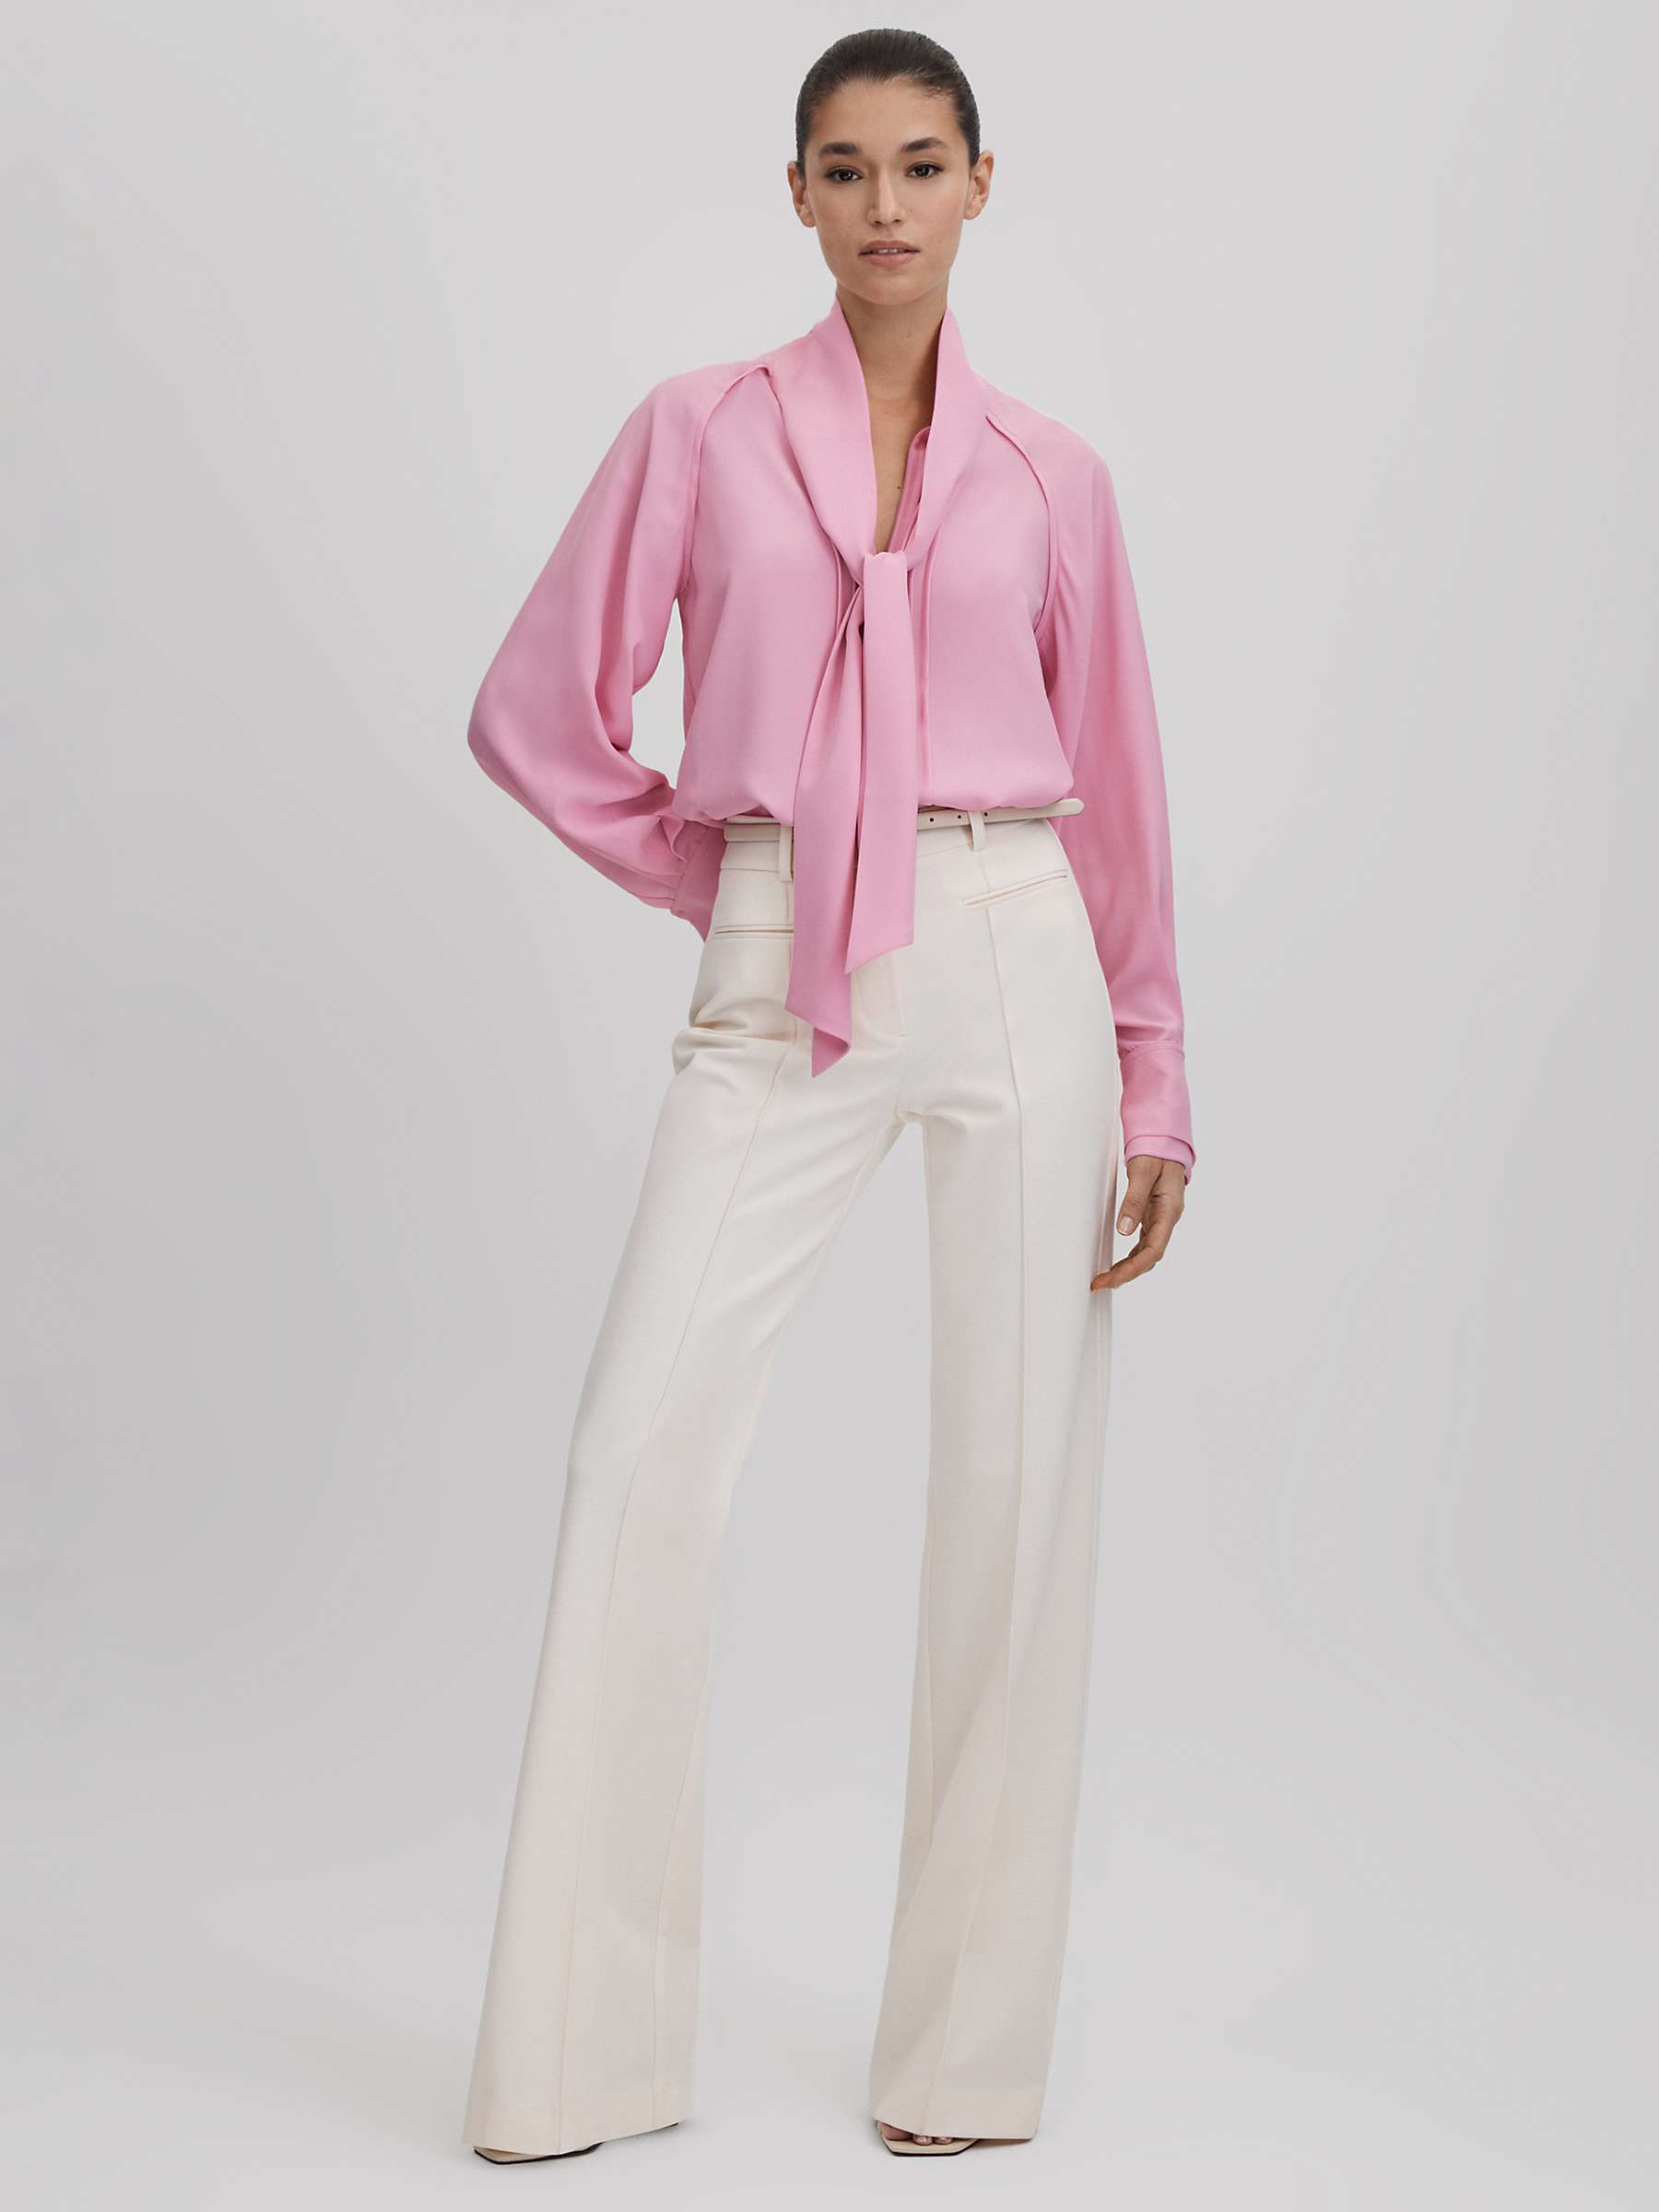 Buy Reiss Ella Tie Detail Blouse, Pink Online at johnlewis.com